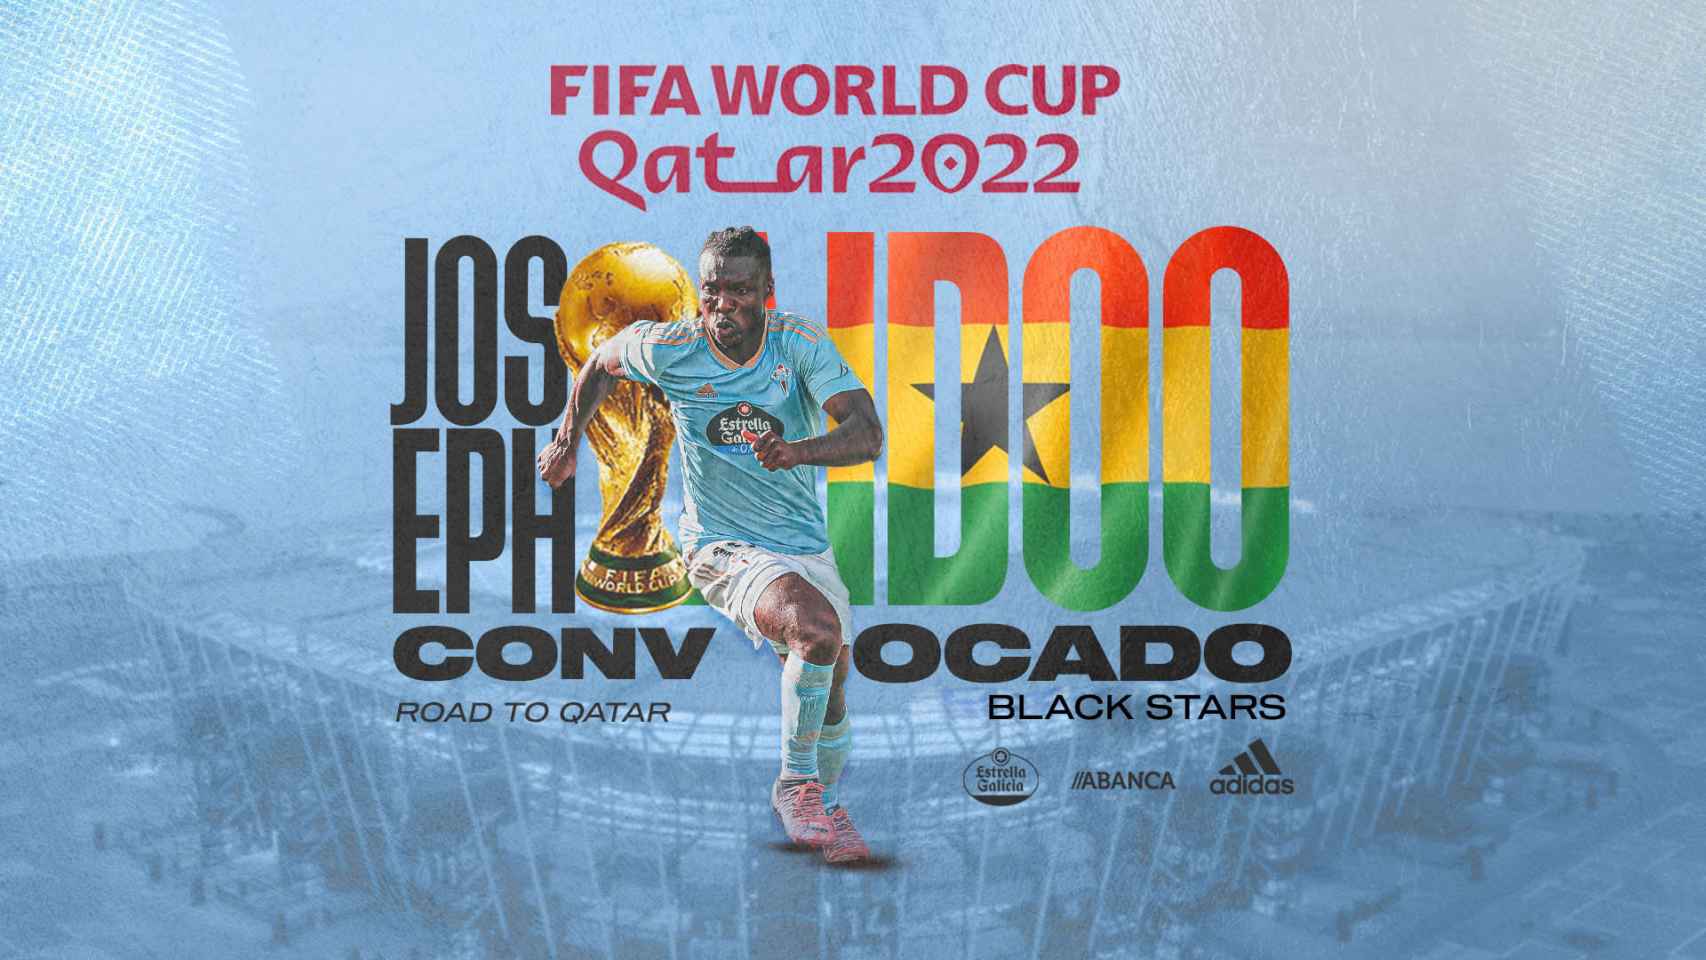 El celeste Joseph Aidoo, convocado para jugar en Qatar con la selección de Ghana